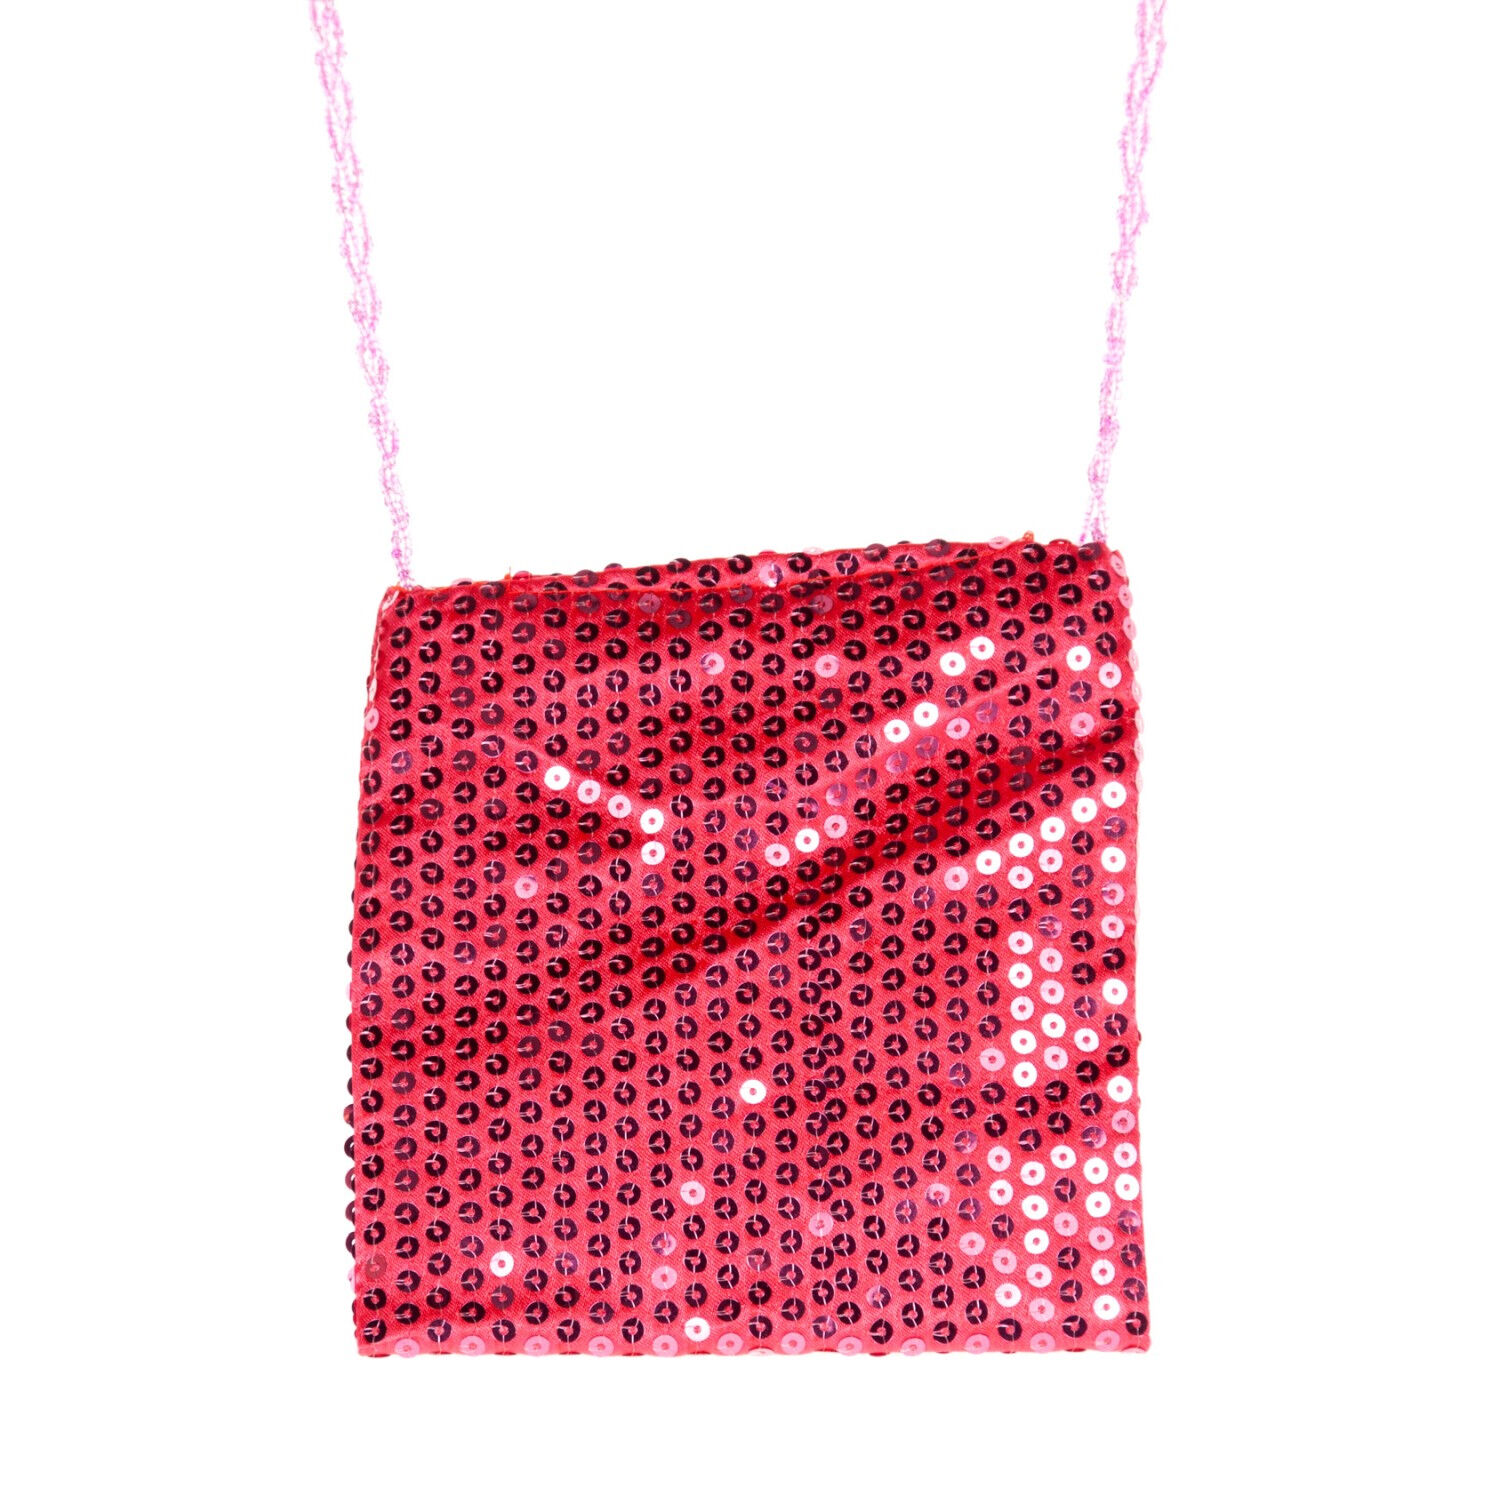 Tasche mit Pailletten, pink, ca. 18x18cm Bild 2